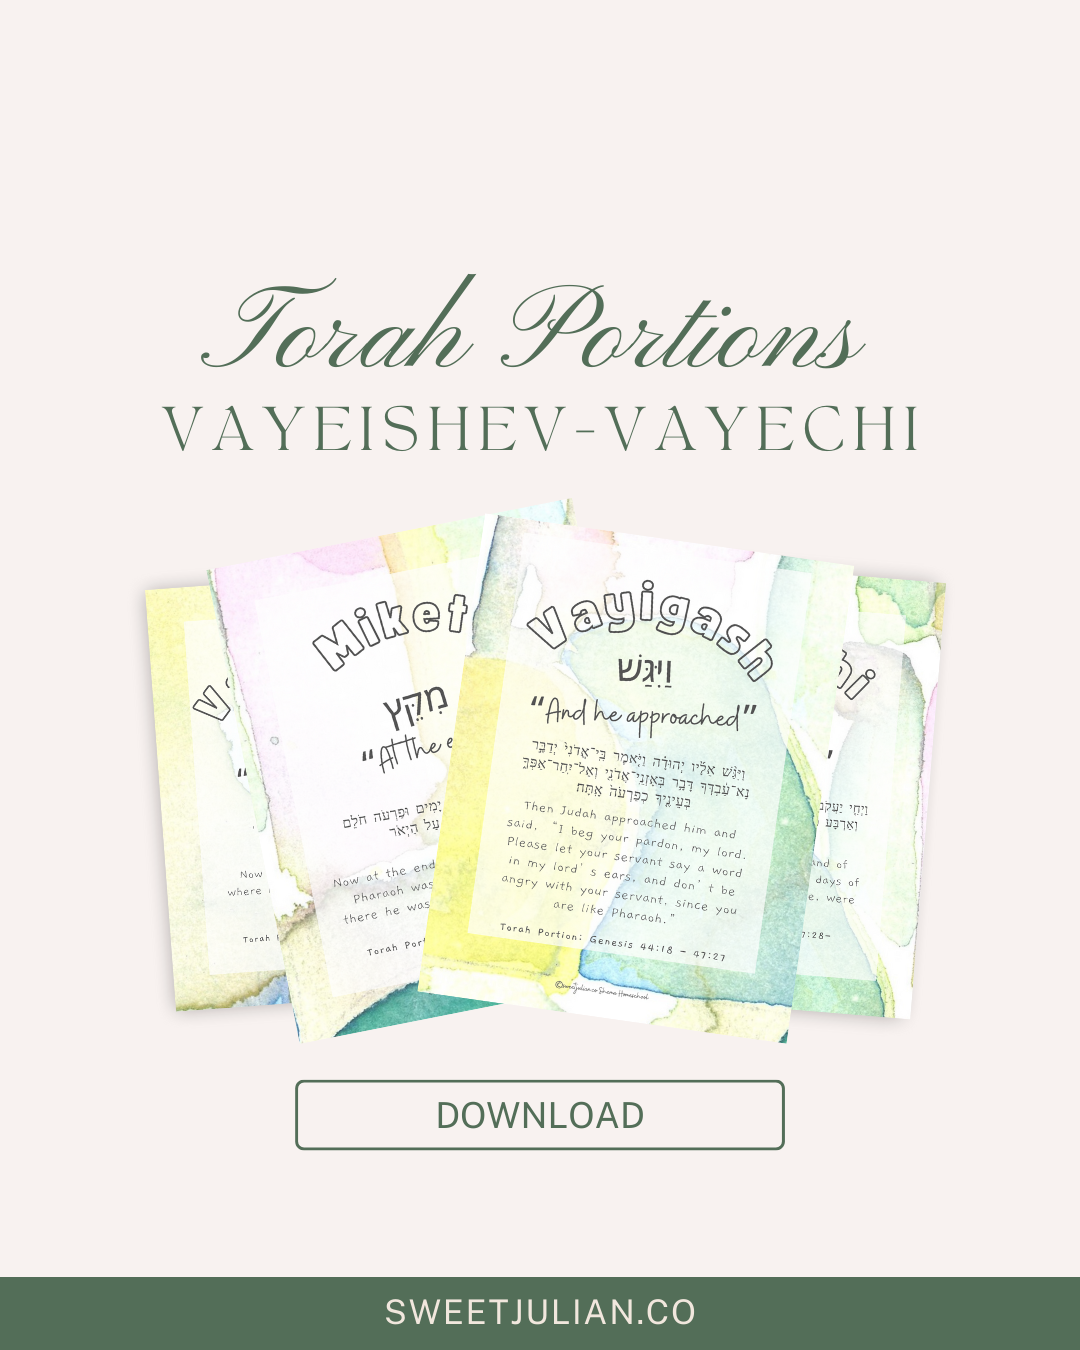 Torah Portion Journal: Vayeishev-Vayechi 🔔